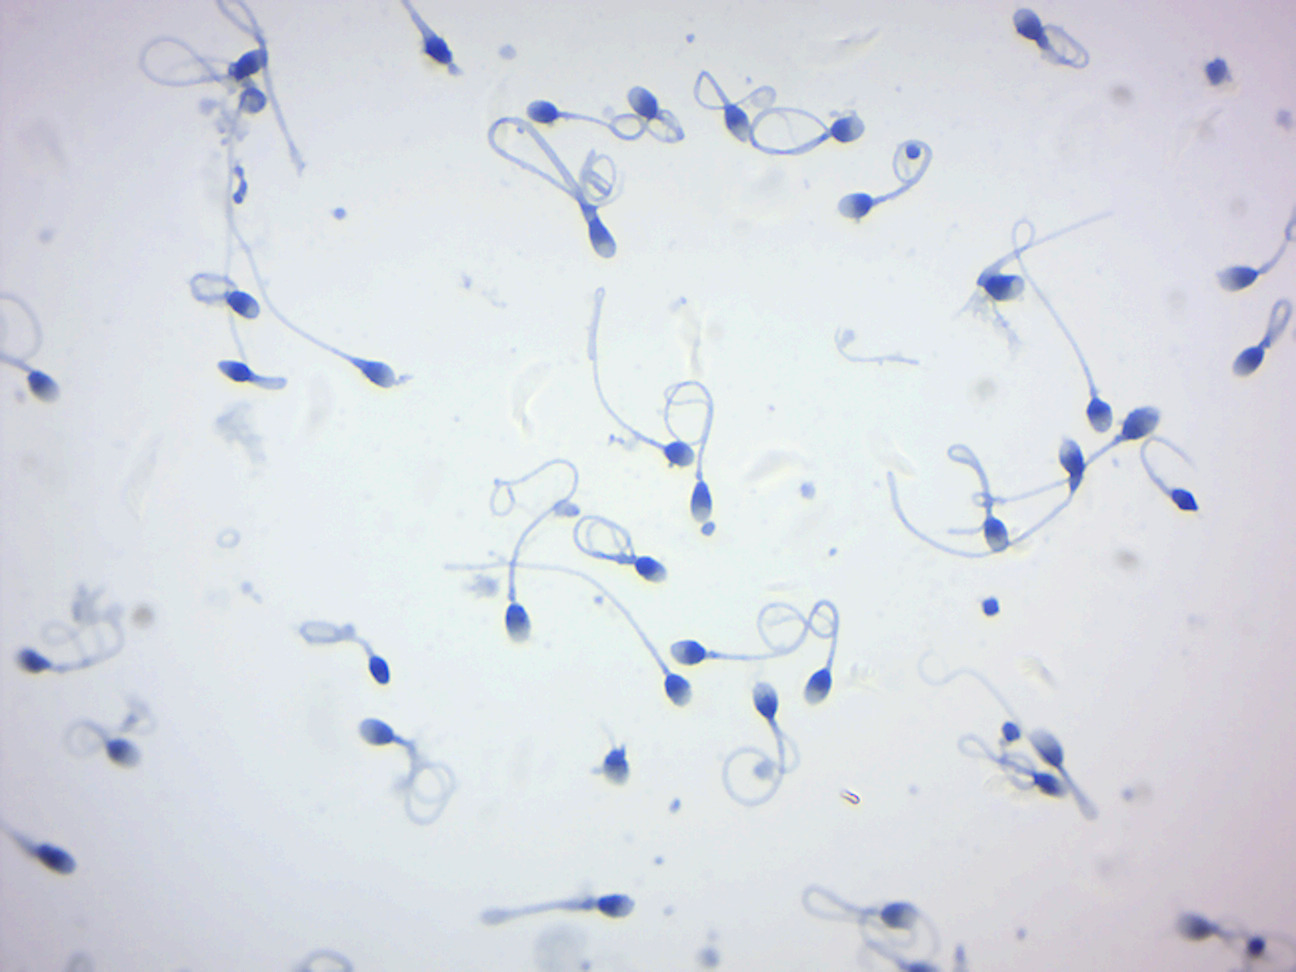 Human sperm.